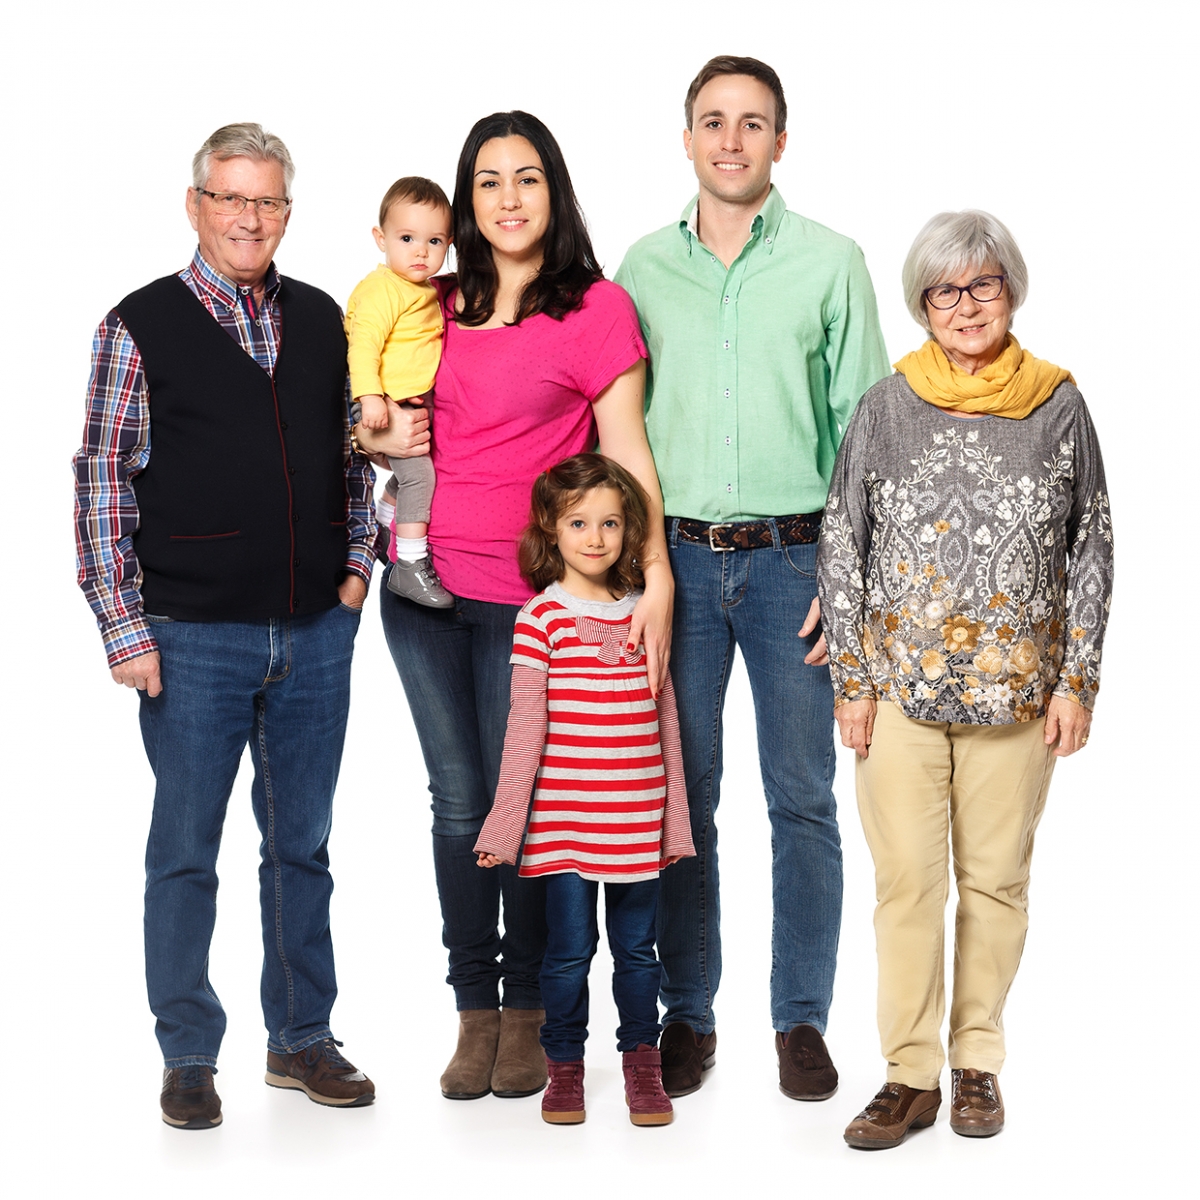 Imagen en la que se ve una familia compuesta por abuelo, abuela, madre, padre, una hija y un hijo